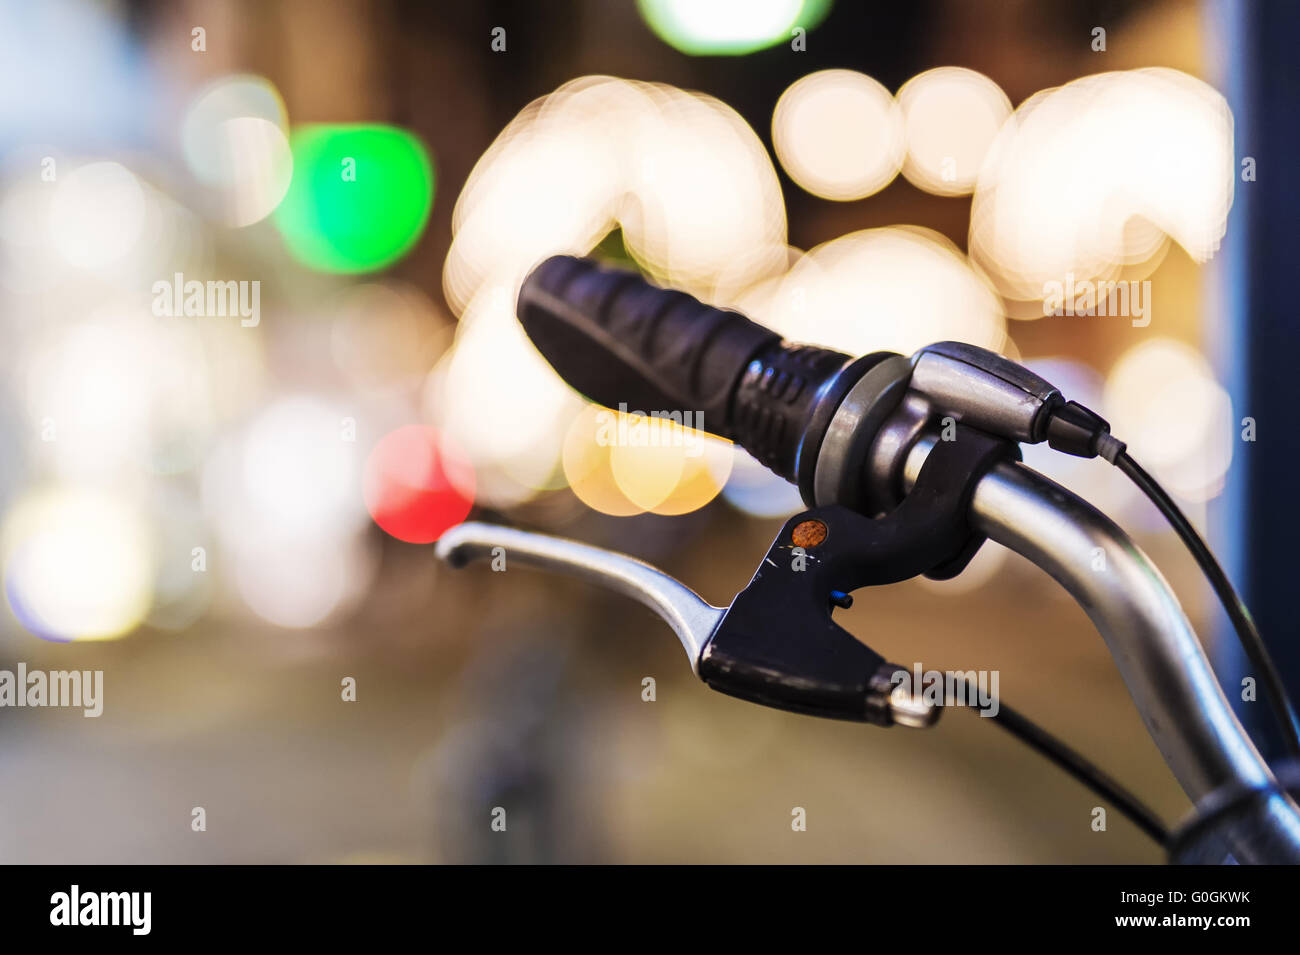 Ein Fahrradlenker mit einer Handbremse im Gegenlicht des Anzeigefensters. Nachtaufnahme. Stockfoto